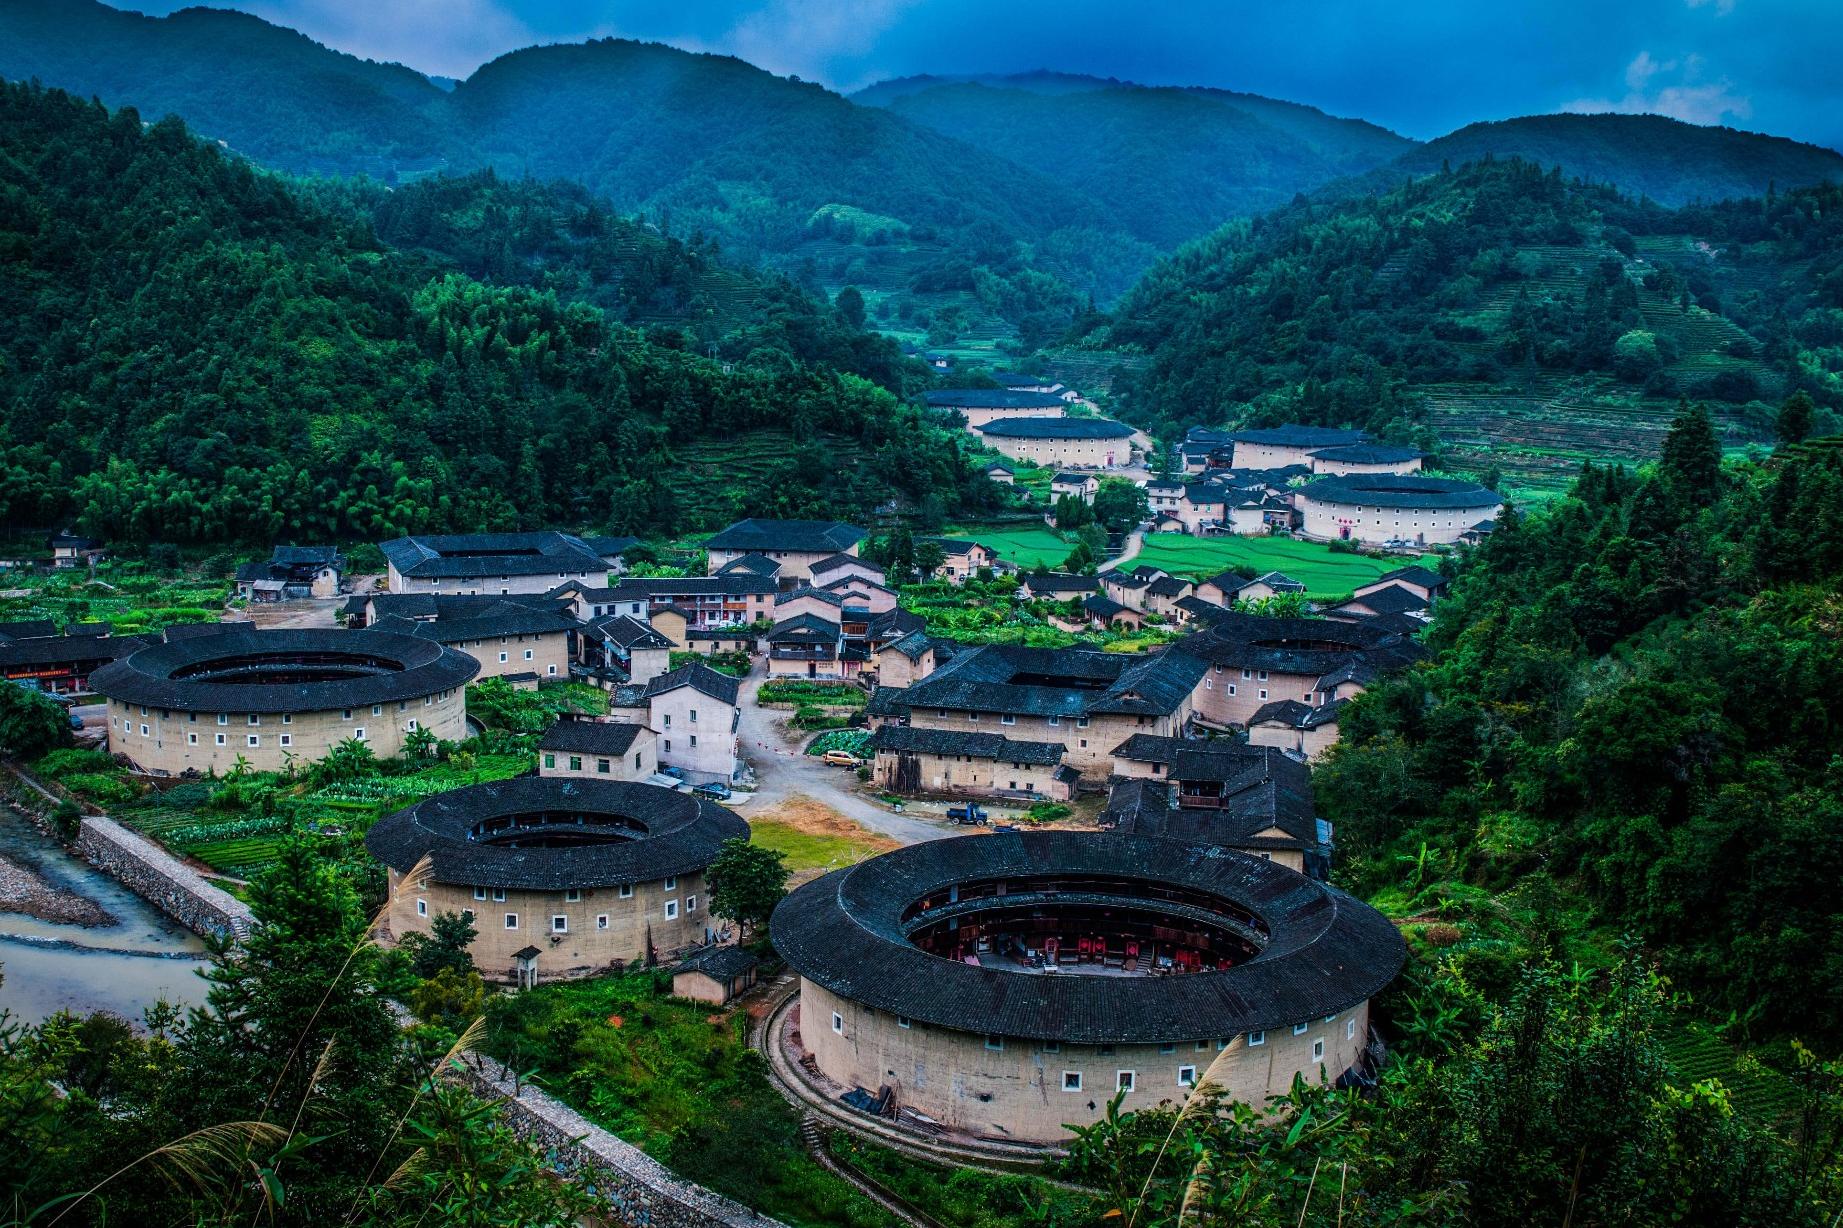 忘记乌镇、周庄吧！这个中国第一座被列入世界文化遗产的小镇才是最美的天堂！